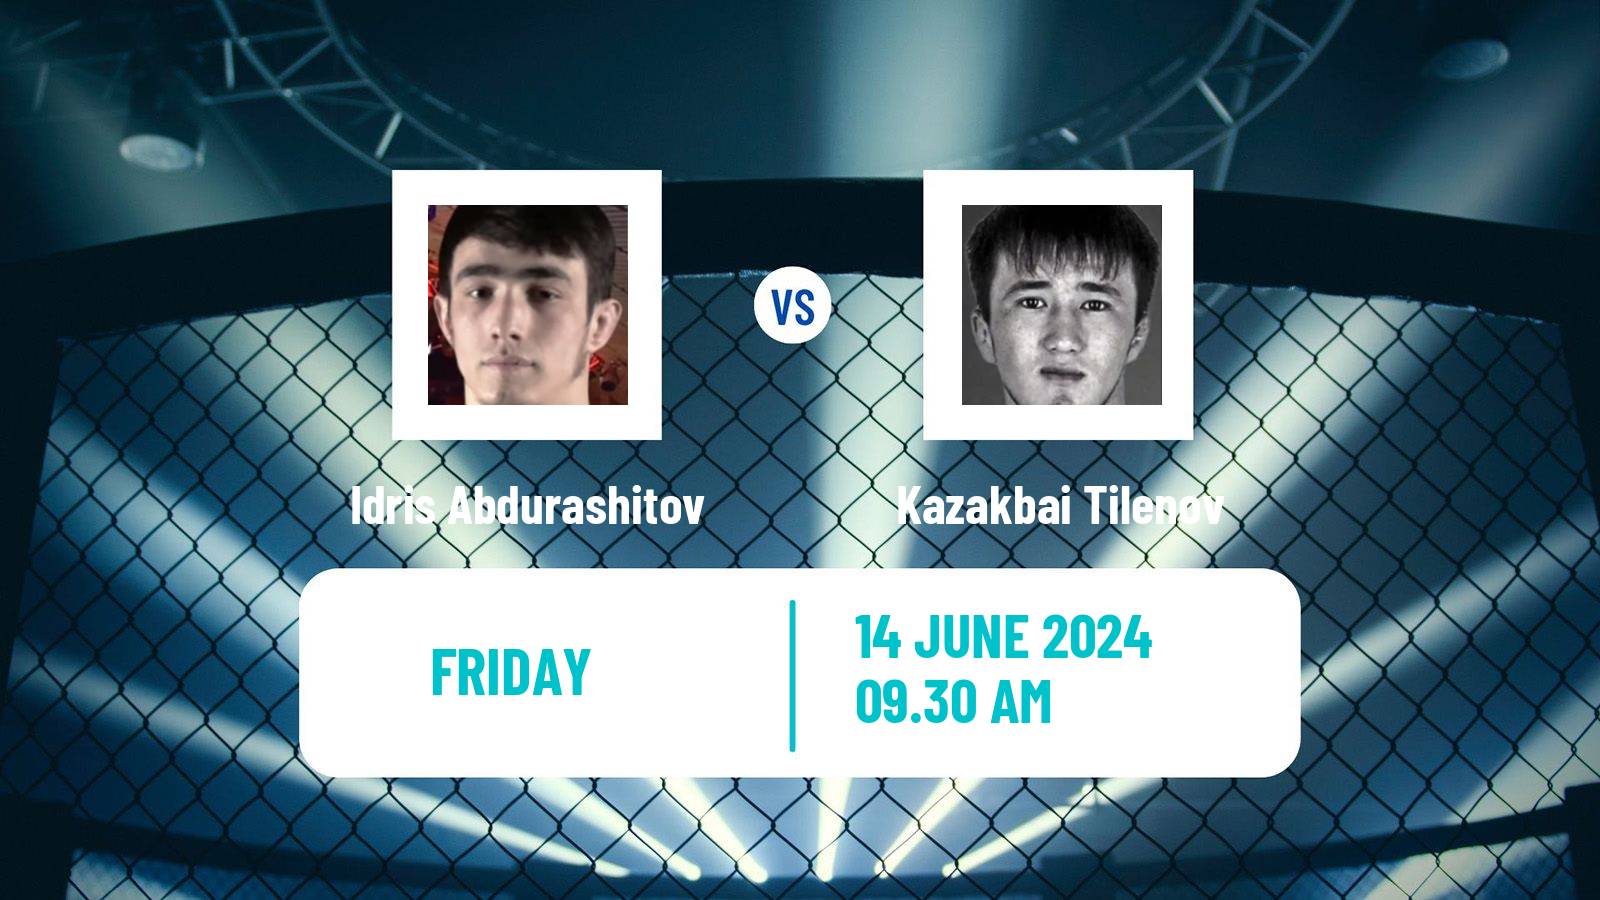 MMA Bantamweight One Championship Men Idris Abdurashitov - Kazakbai Tilenov